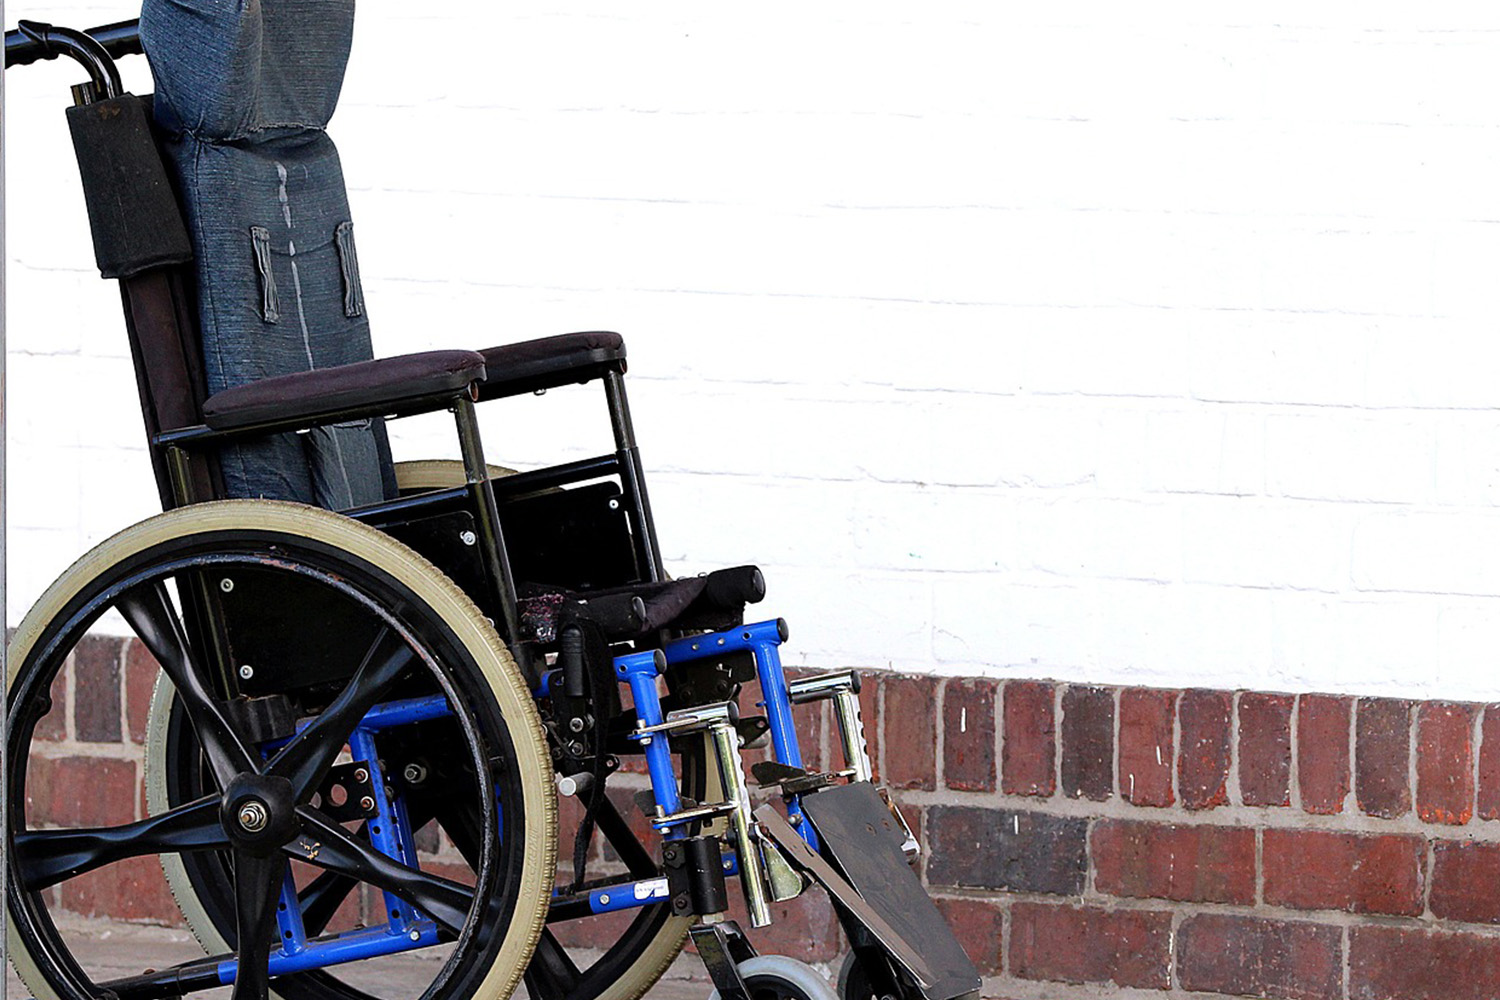 Dieses Bild zeigt einen elektrischen Rollstuhl